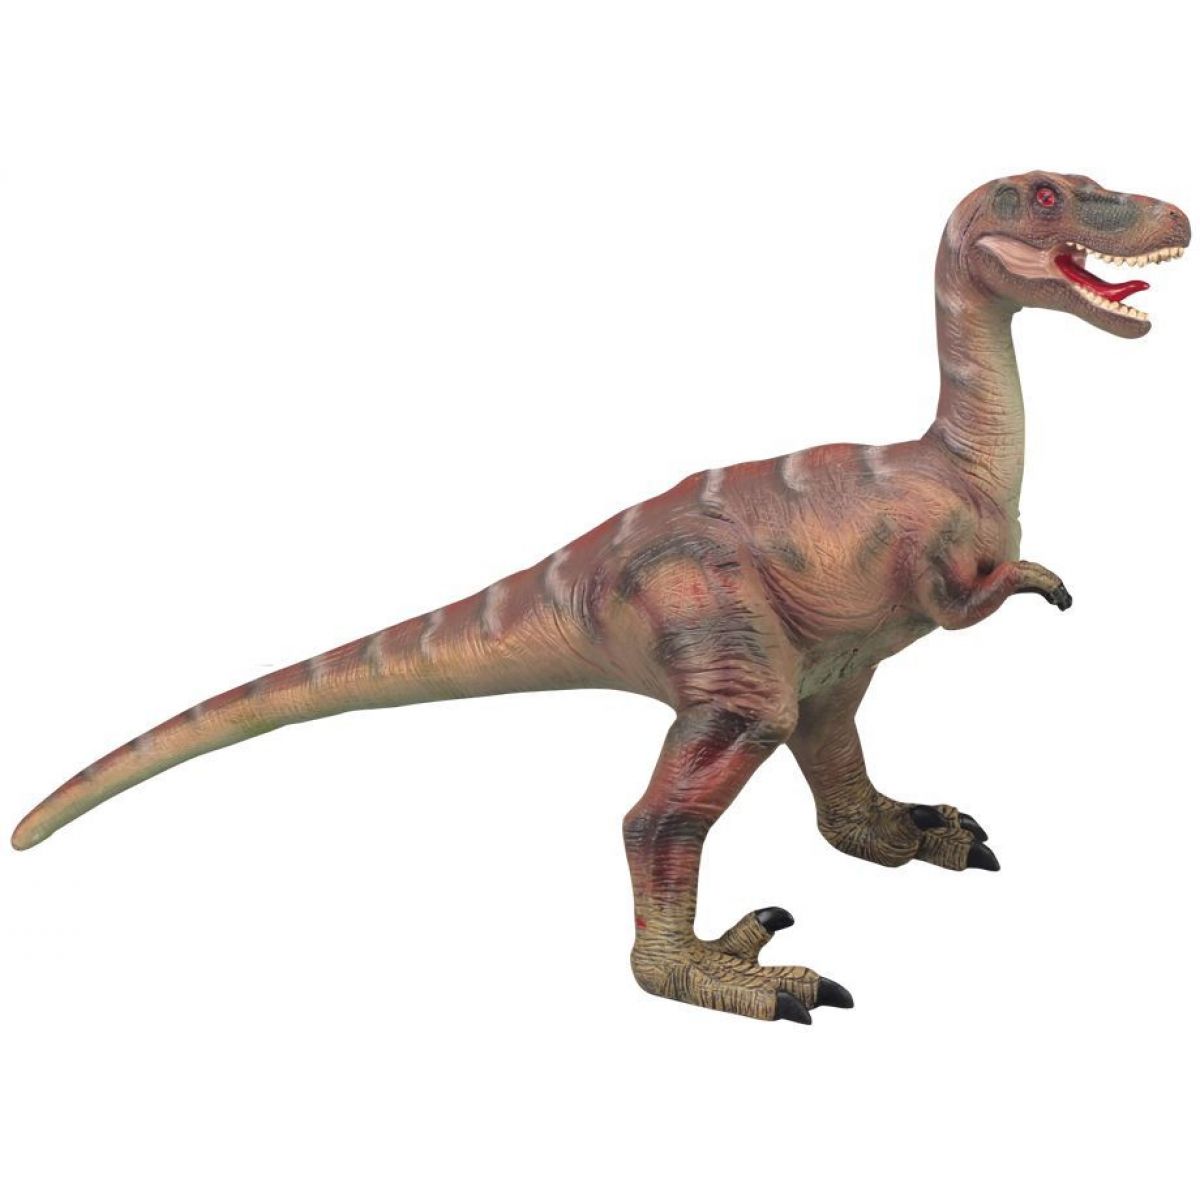 Alltoys Dinosaurus měkký Velociraptor 65 cm hnědý.

Funkčnost:


	vydává zvuk dinosaura
	aktivace tlačítkem na spodní části těla


Kupte dětem velkou figurku dinosaura!

Vhodné pro děti od 5 let
Baterie: 3 x LR44 (jsou součástí)
Výška: 65 cm